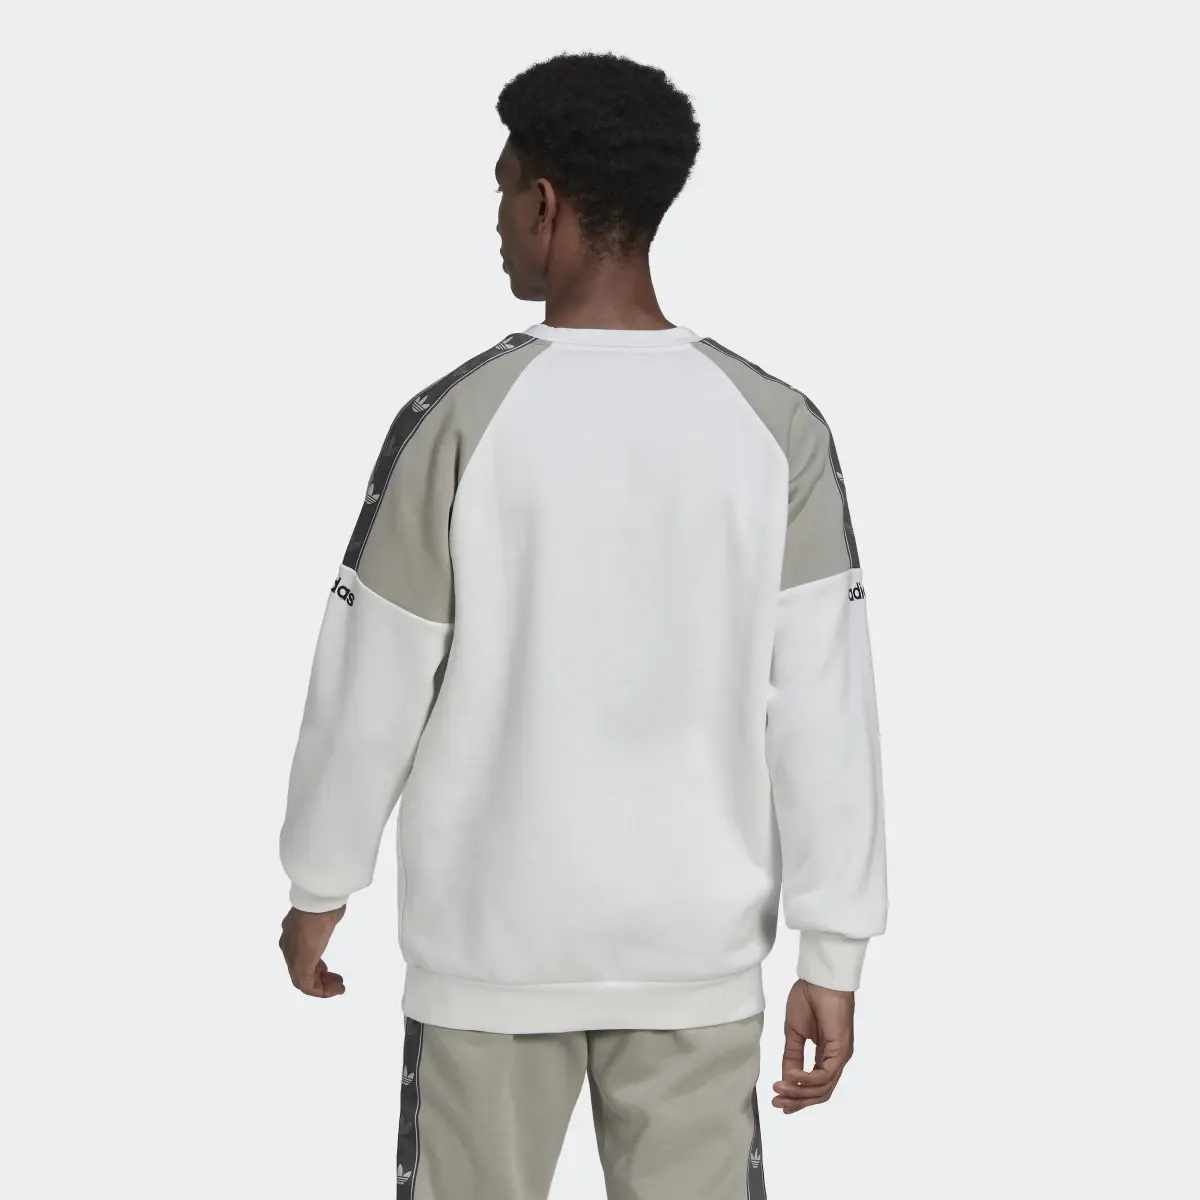 Adidas Tape Fleece Crew Sweatshirt. 3